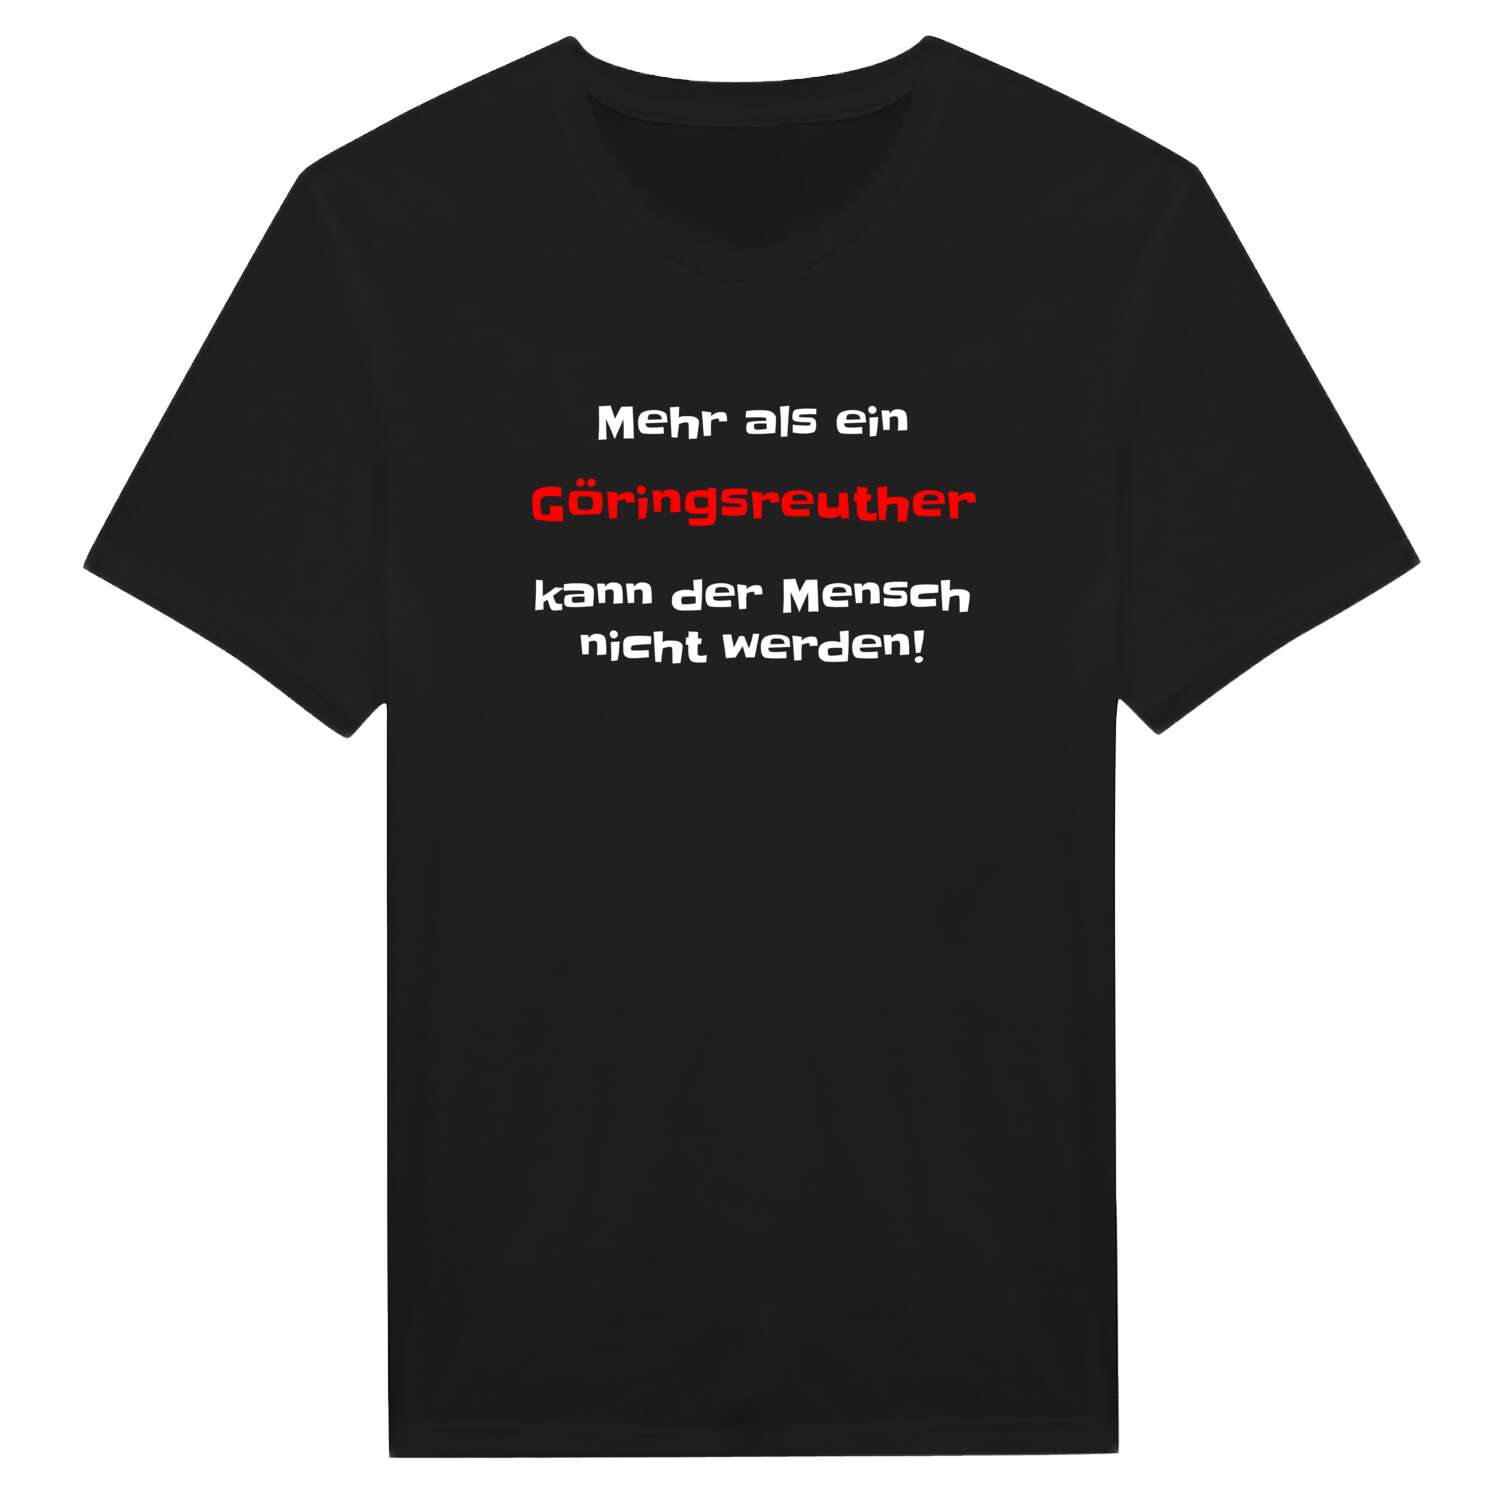 Göringsreuth T-Shirt »Mehr als ein«